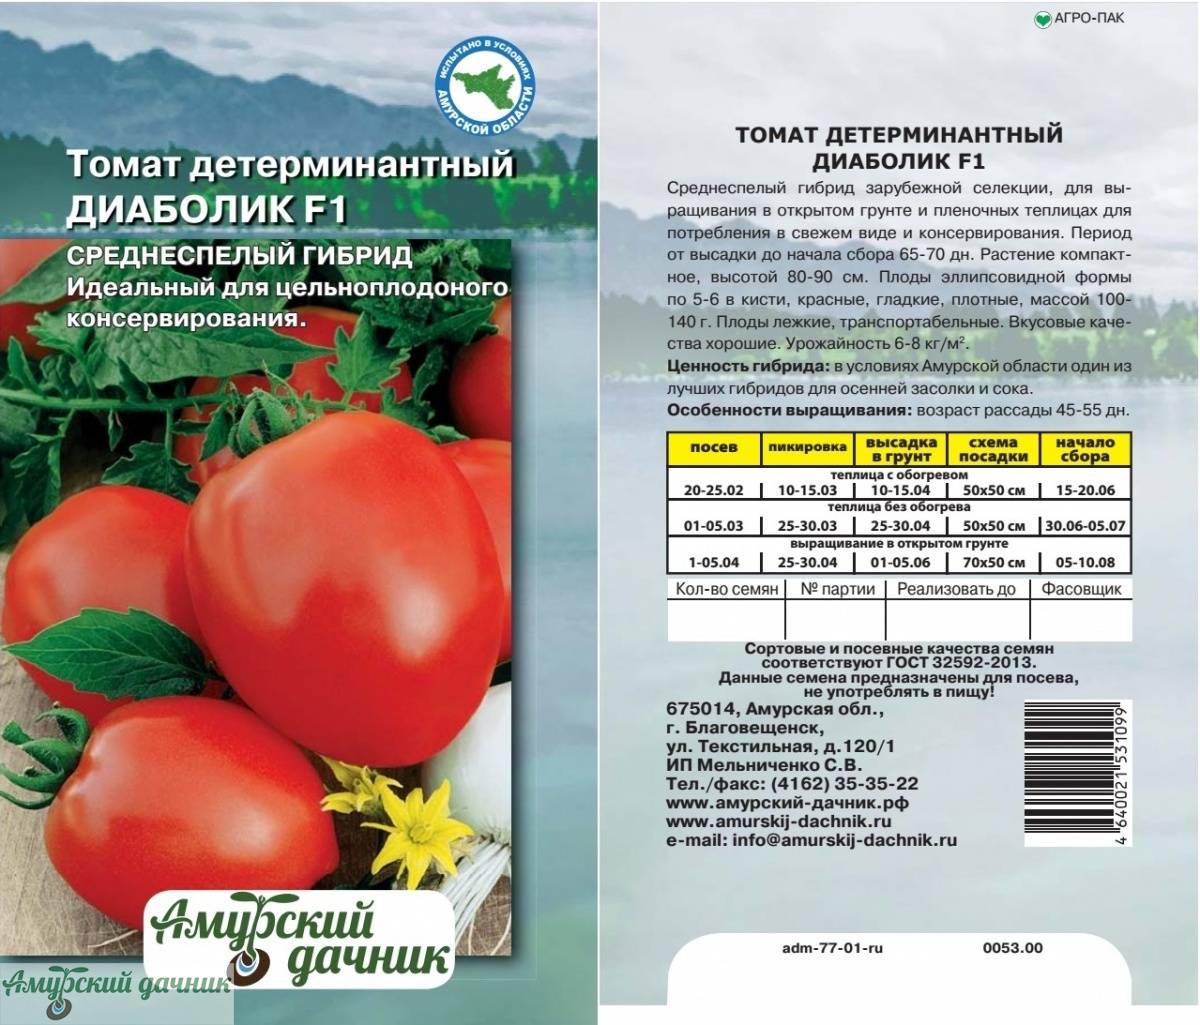 51 самых ранних сортов томатов для открытого грунта